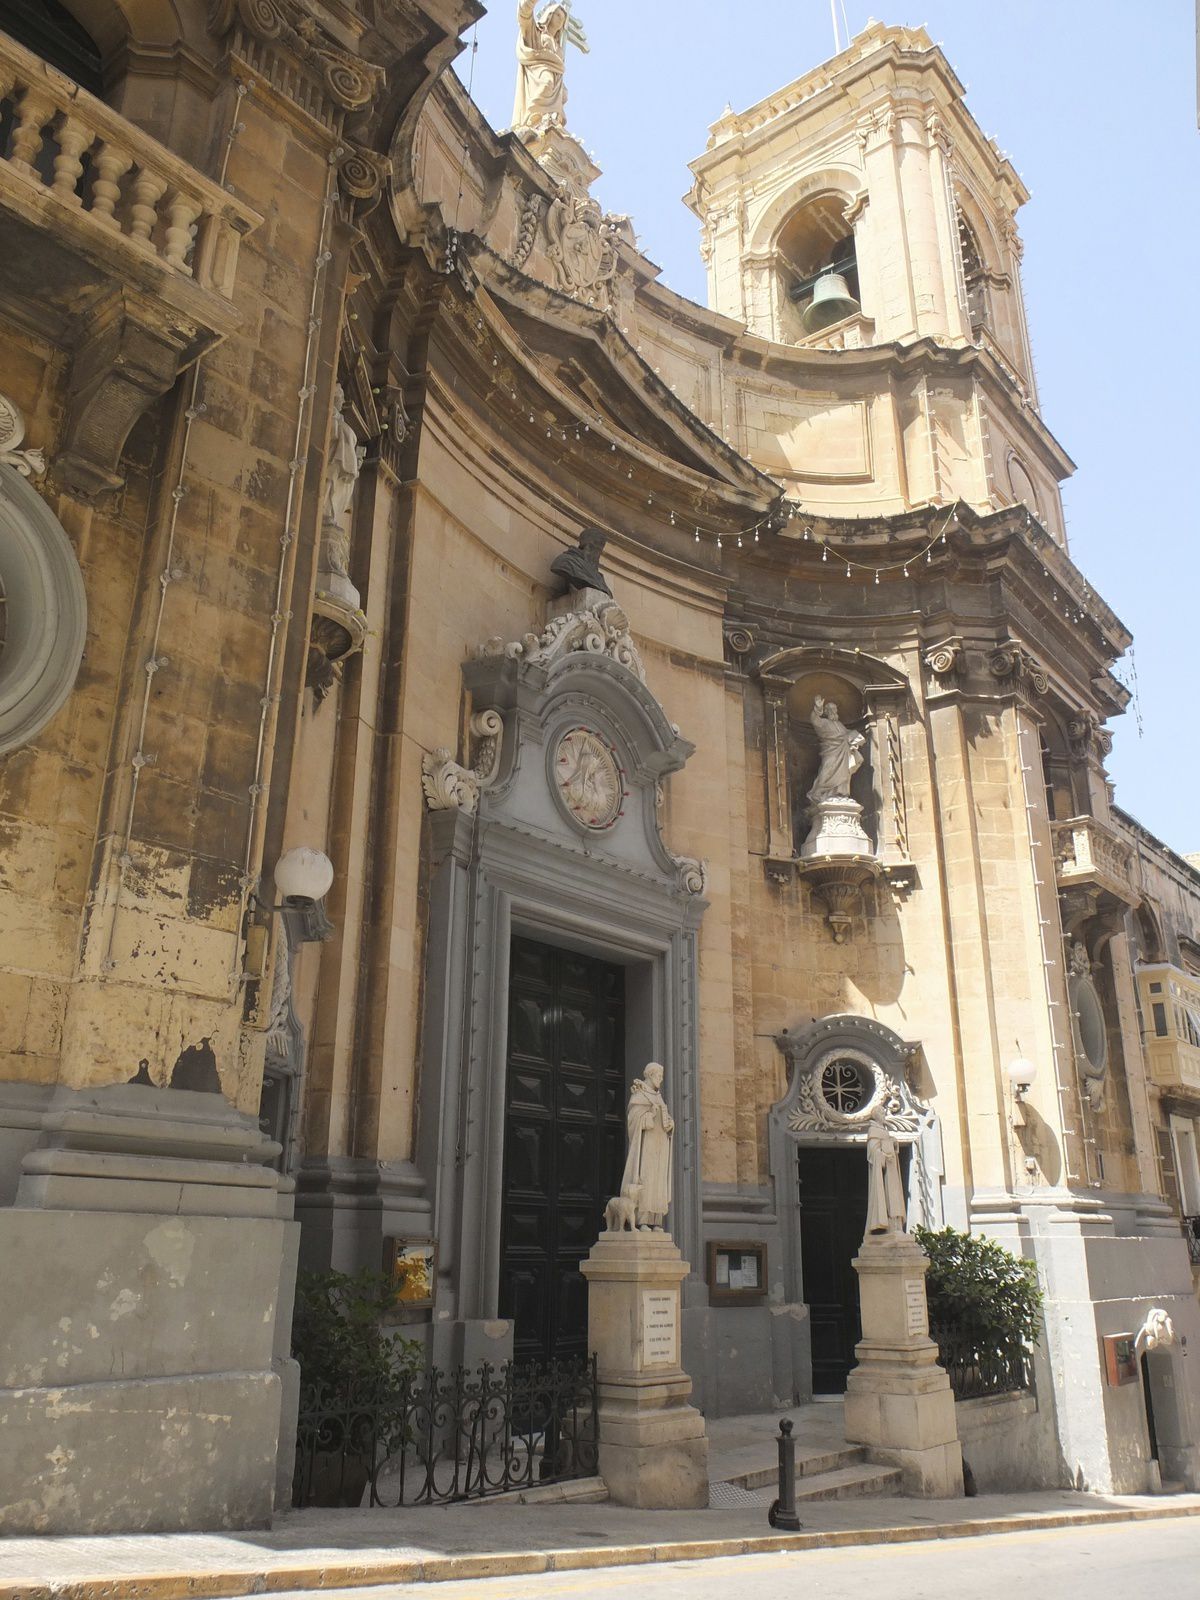 Magnifiques églises à La Valette, Victoria (Gozo) et Mdina. Et toujours la teinte ocre de la pierre calcaire. Art et déco baroques à l'intérieur.